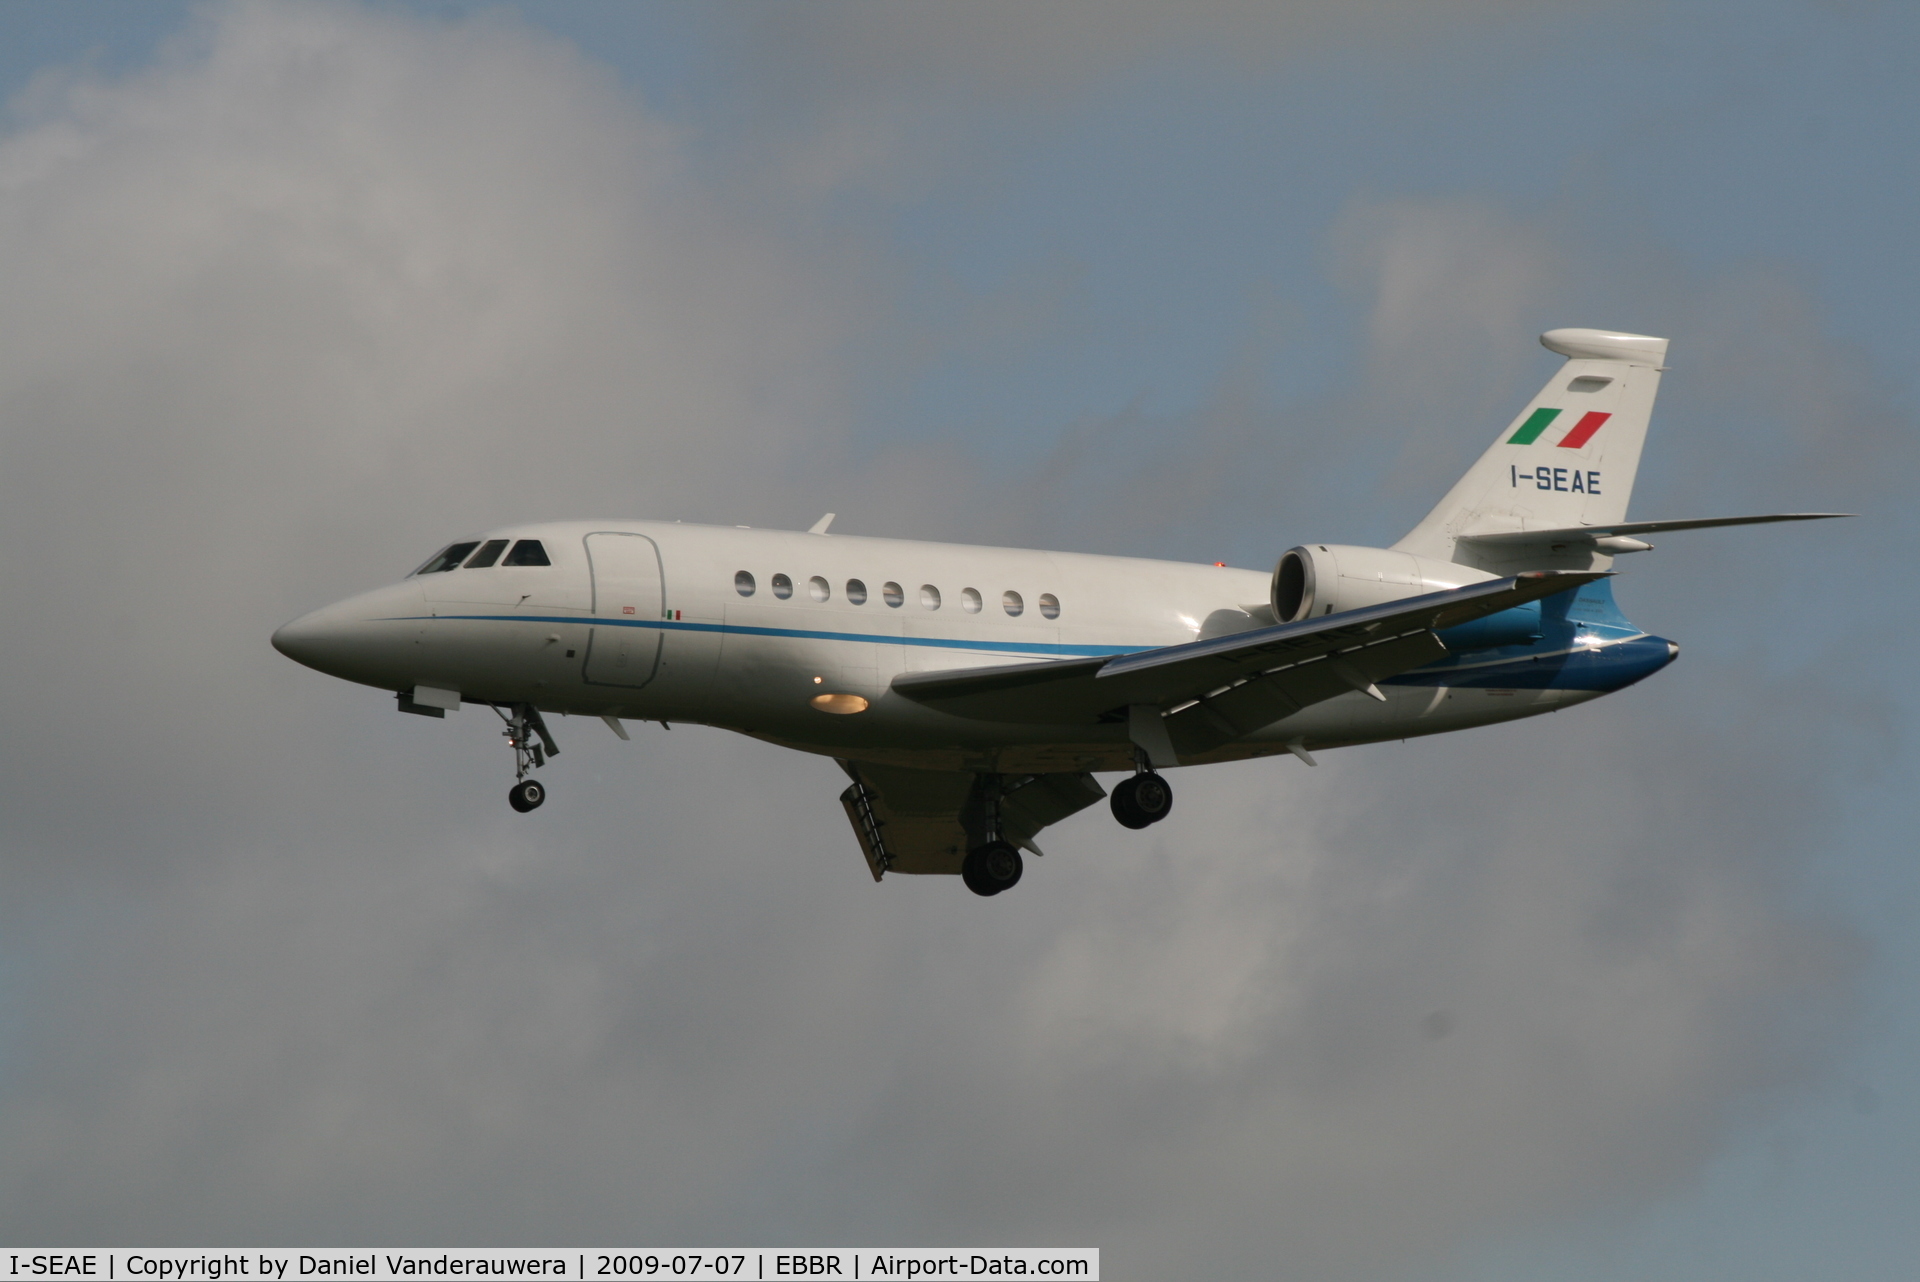 I-SEAE, 2003 Dassault Falcon 2000 C/N 200, descending to rwy 25L